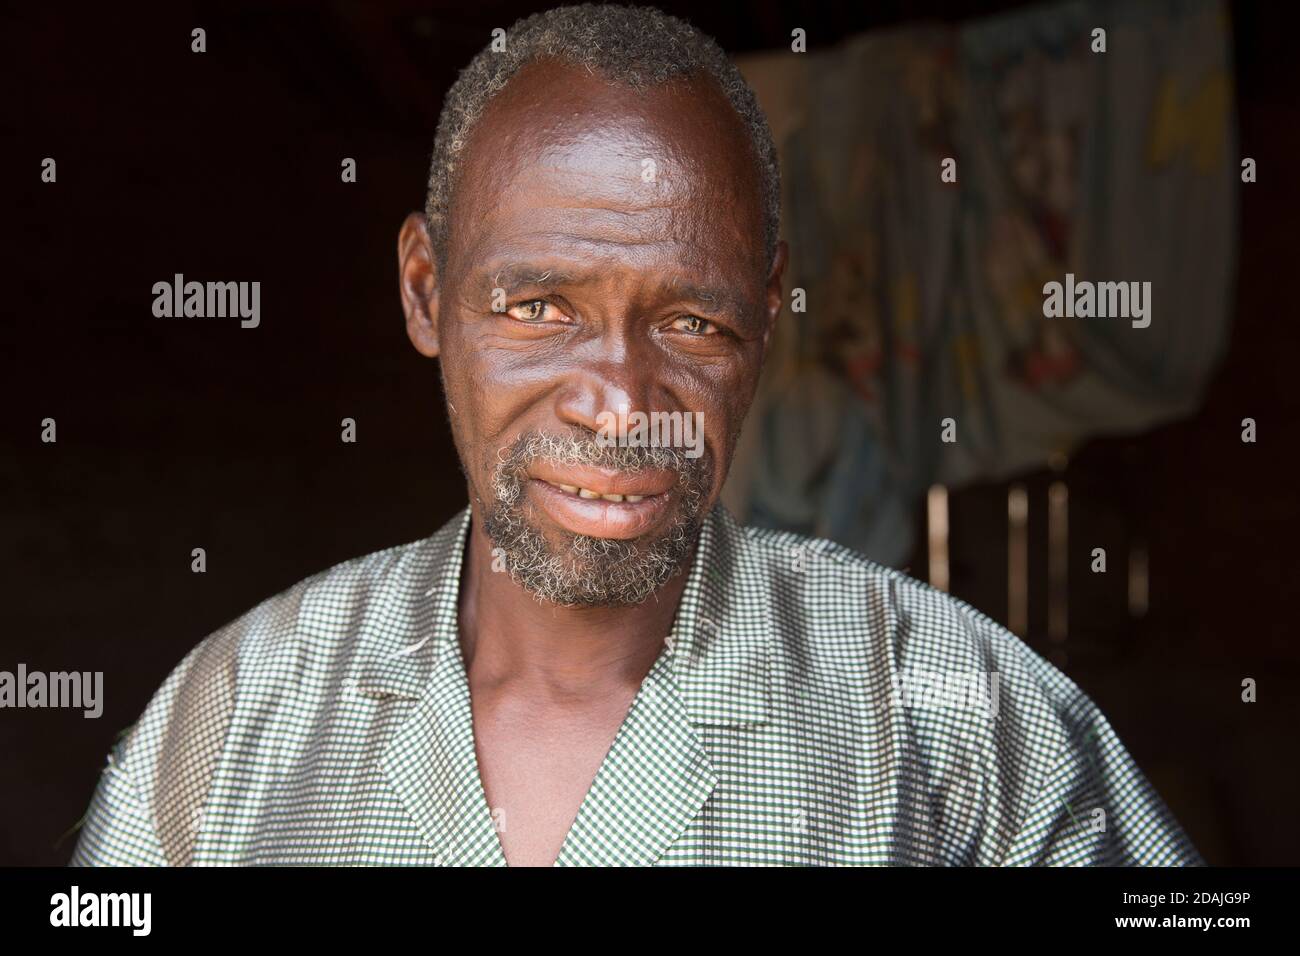 Delaba Koro, Dorf 60 km von Selingue, Mali, 27. April 2015; in diesem Dorf wurden viele Menschen vom Staudamm vertrieben. Oualama Doumbia, 56, ist Landwirt, Fischer, Jäger, Und Sohn des früheren Chefs. Seine Erwartungen an den Staudamm wurden nicht erfüllt - er hoffte auf eine gute Gesundheitsversorgung, sauberes Wasser, Strom und eine allgemeine Verbesserung in der Landwirtschaft, Aber 30 Jahre später gibt es immer noch keinen Strom, nur eine defekte Pumpe, das medizinische Zentrum ist nicht gut ausgestattet und es gibt nur eine Grundschule für die Kinder. Seine Familie gehörte zu den ersten Siedlern des Dorfes. Es waren 500 Personen in der Stockfoto